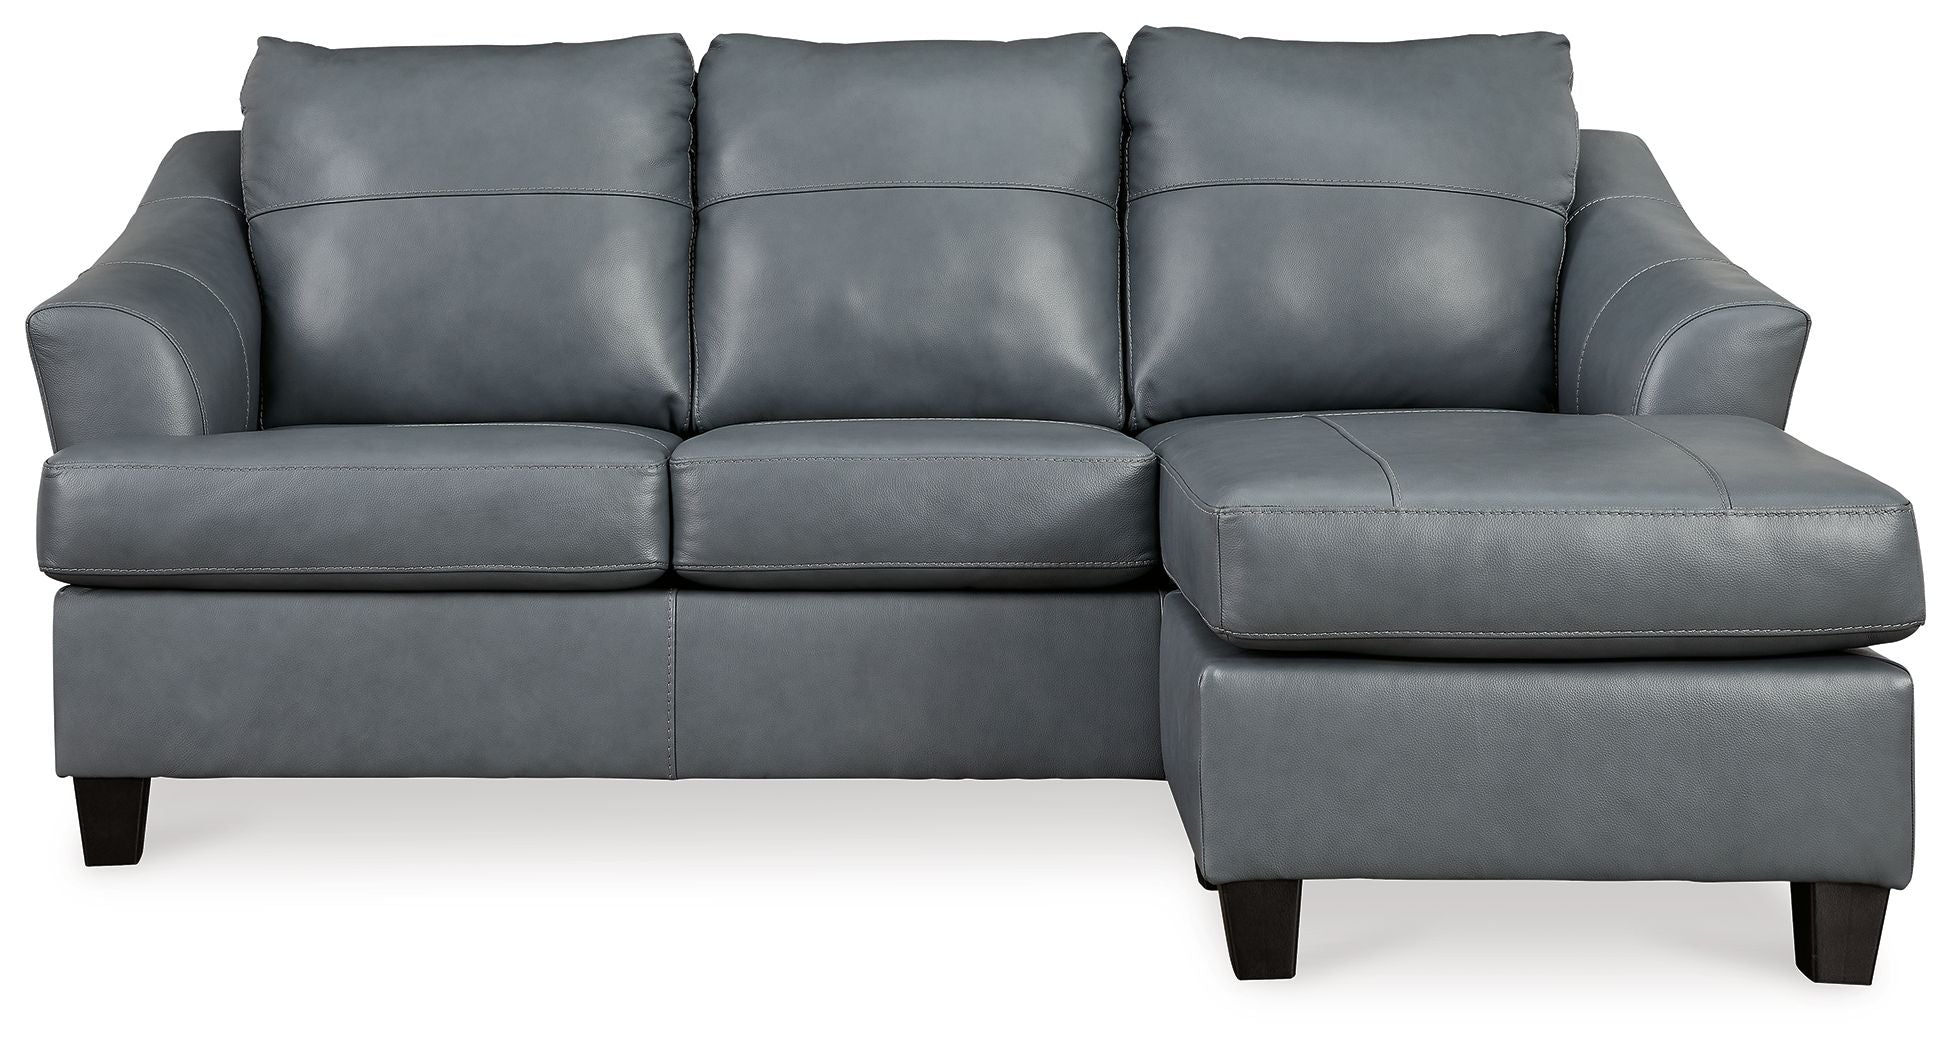 Genoa Leather Sofa Chaise